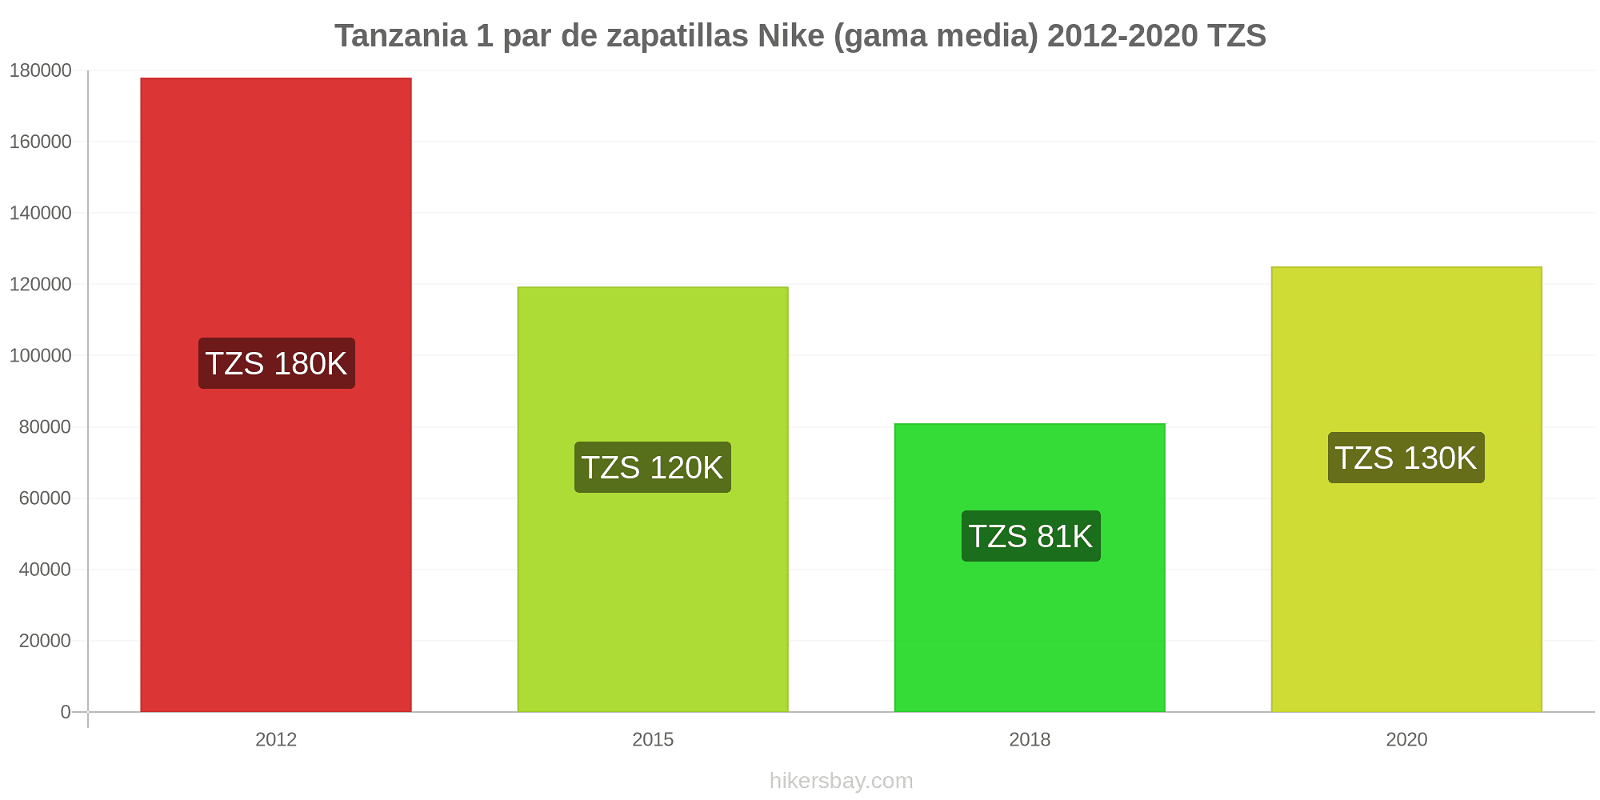 Tanzania cambios de precios 1 par de zapatillas Nike (gama media) hikersbay.com